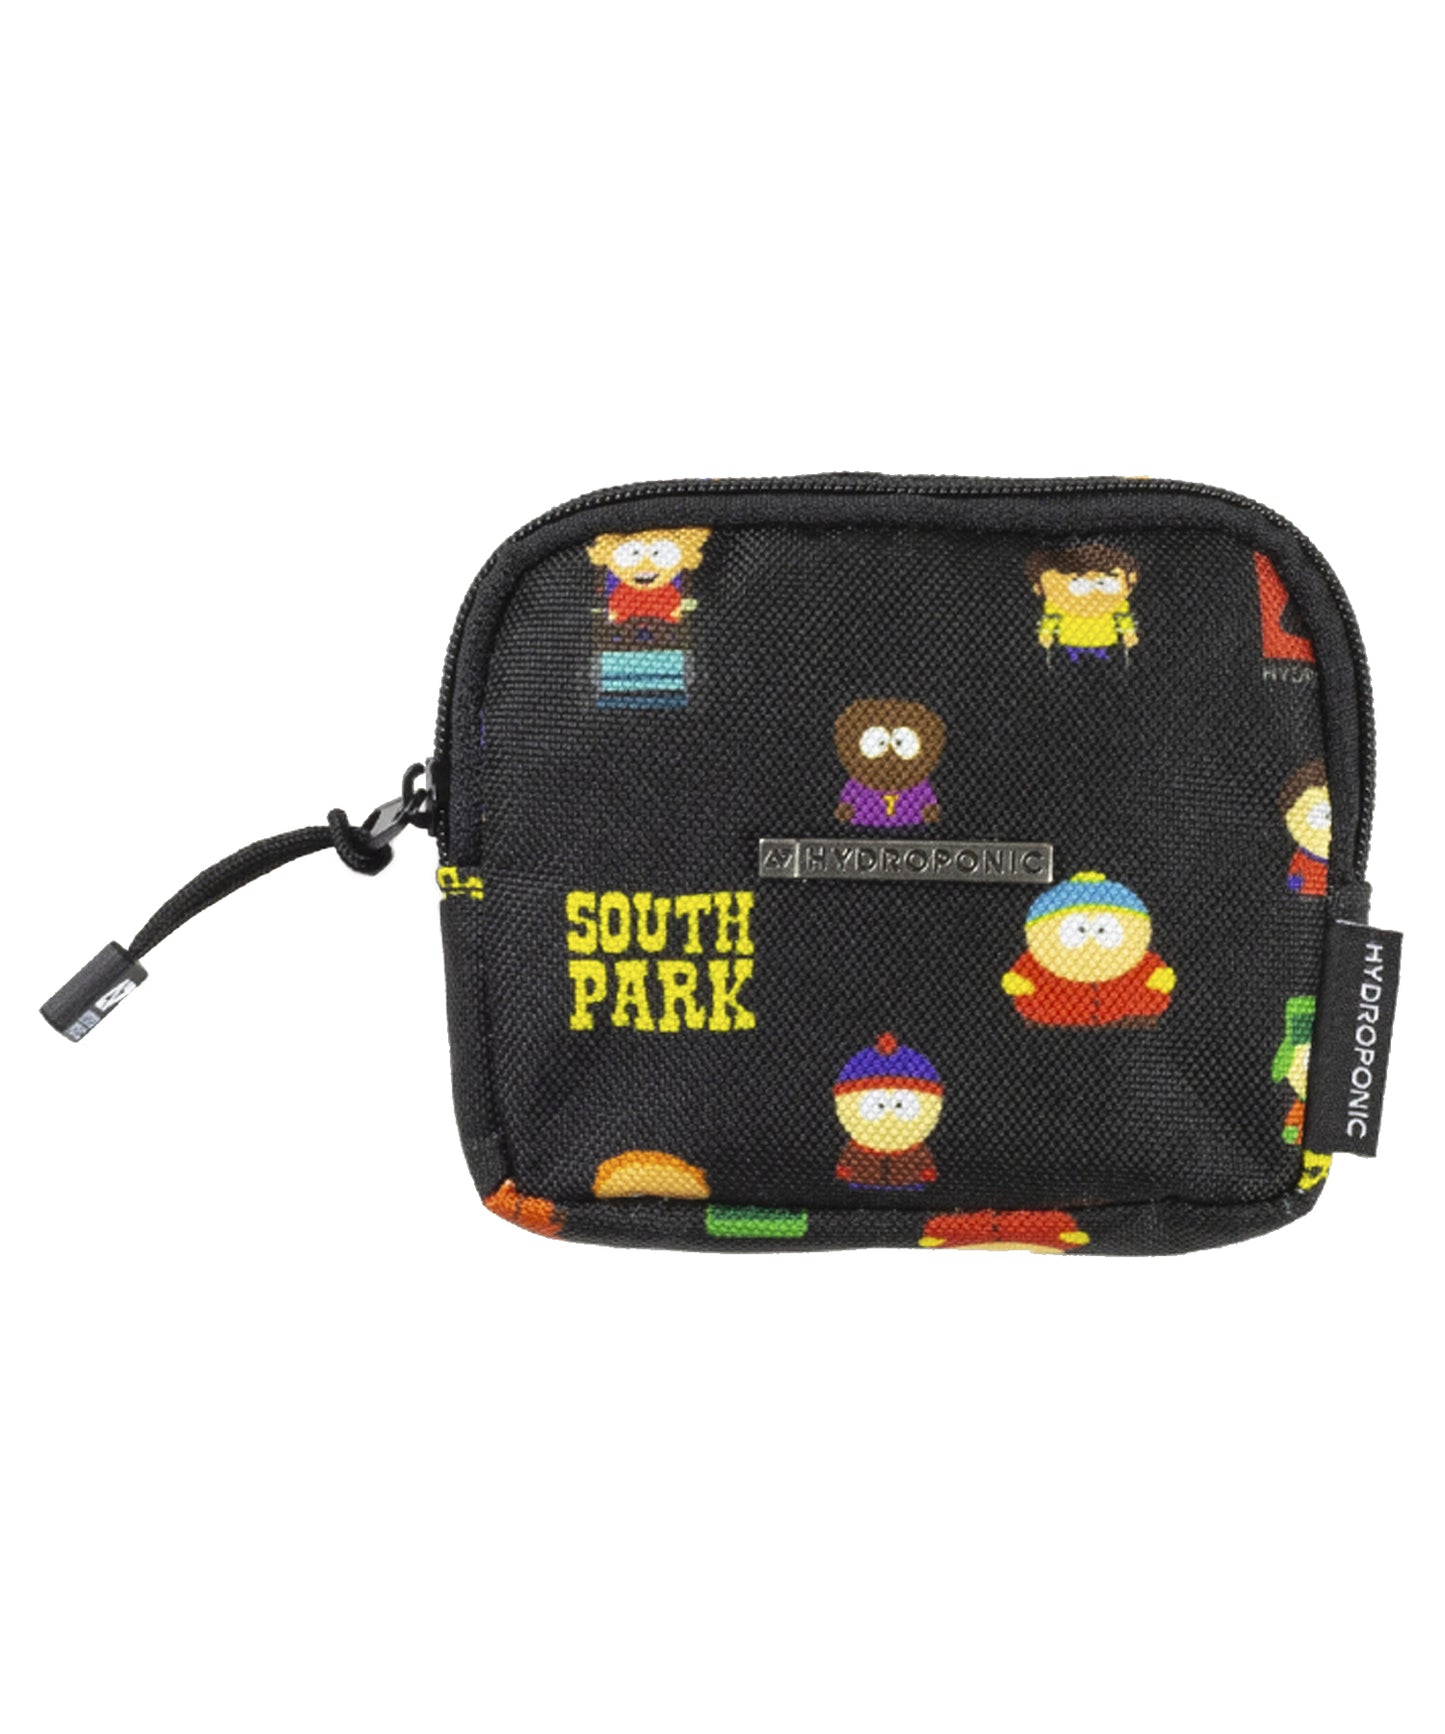 Hydroponic cartera purse colaboración con south park de color negro y dibujos de los personajes de south park.